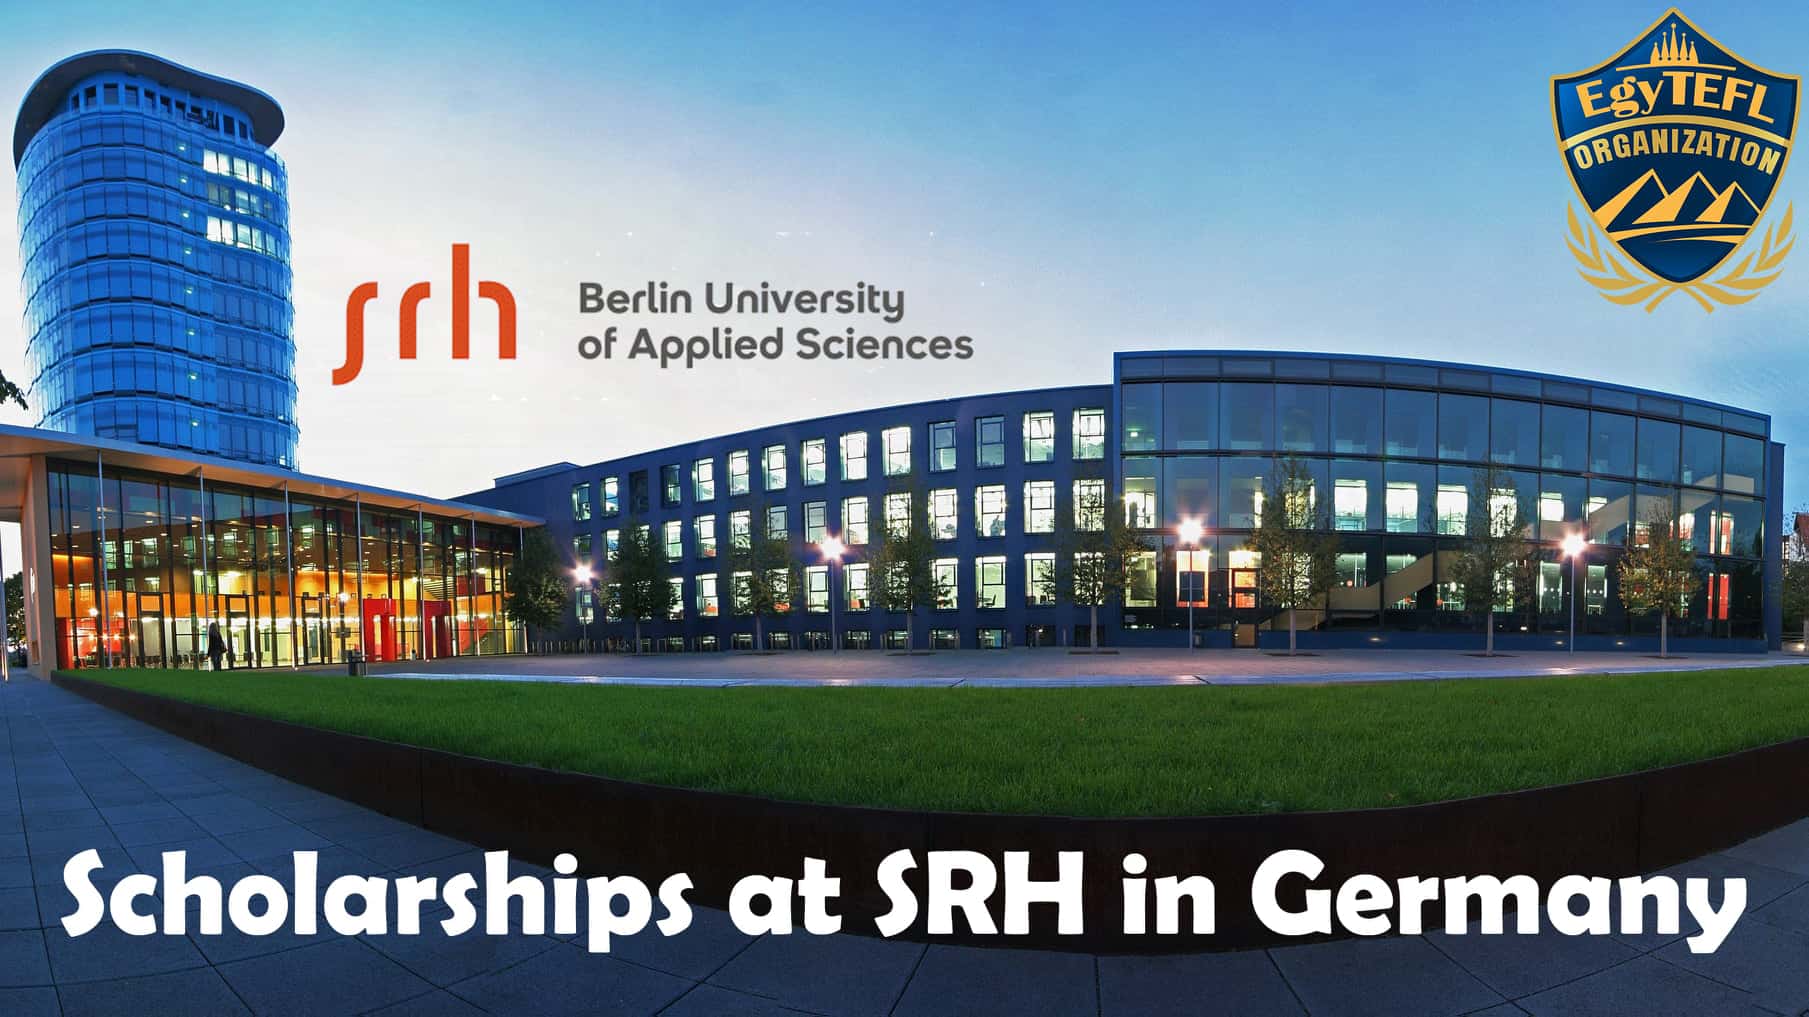 منحة جامعة SRH برلين للعلوم التطبيقية لدراسة الكالورويوس والماجستير في ألمانيا 2022